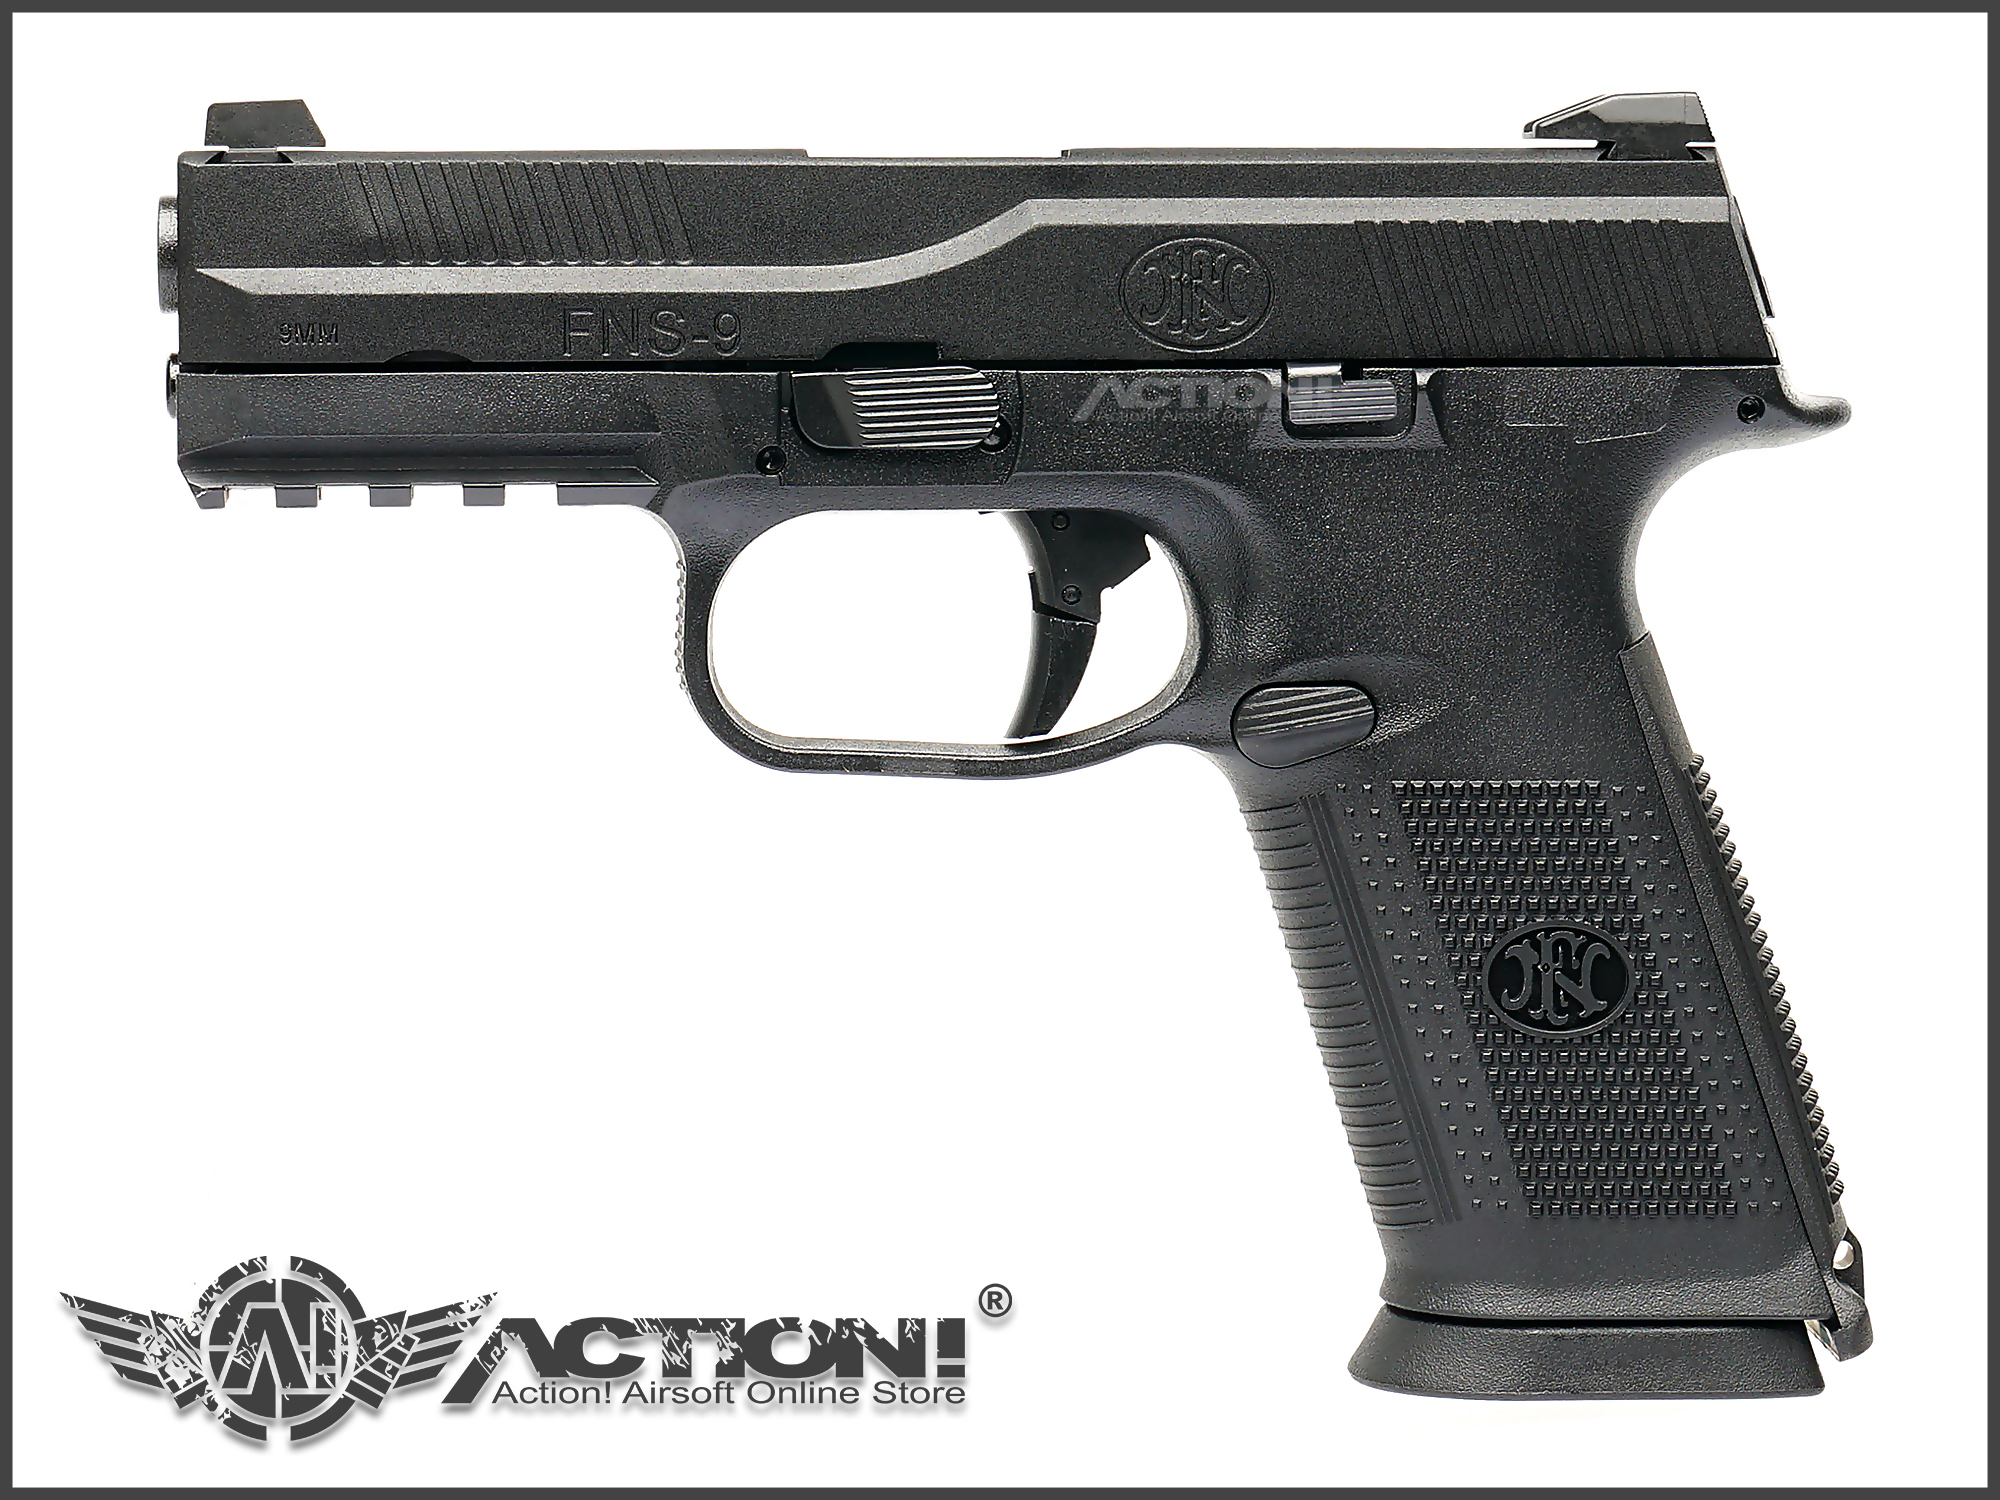 VFC/Cybergun - FN FNS-9 GBB Pistol (Black)